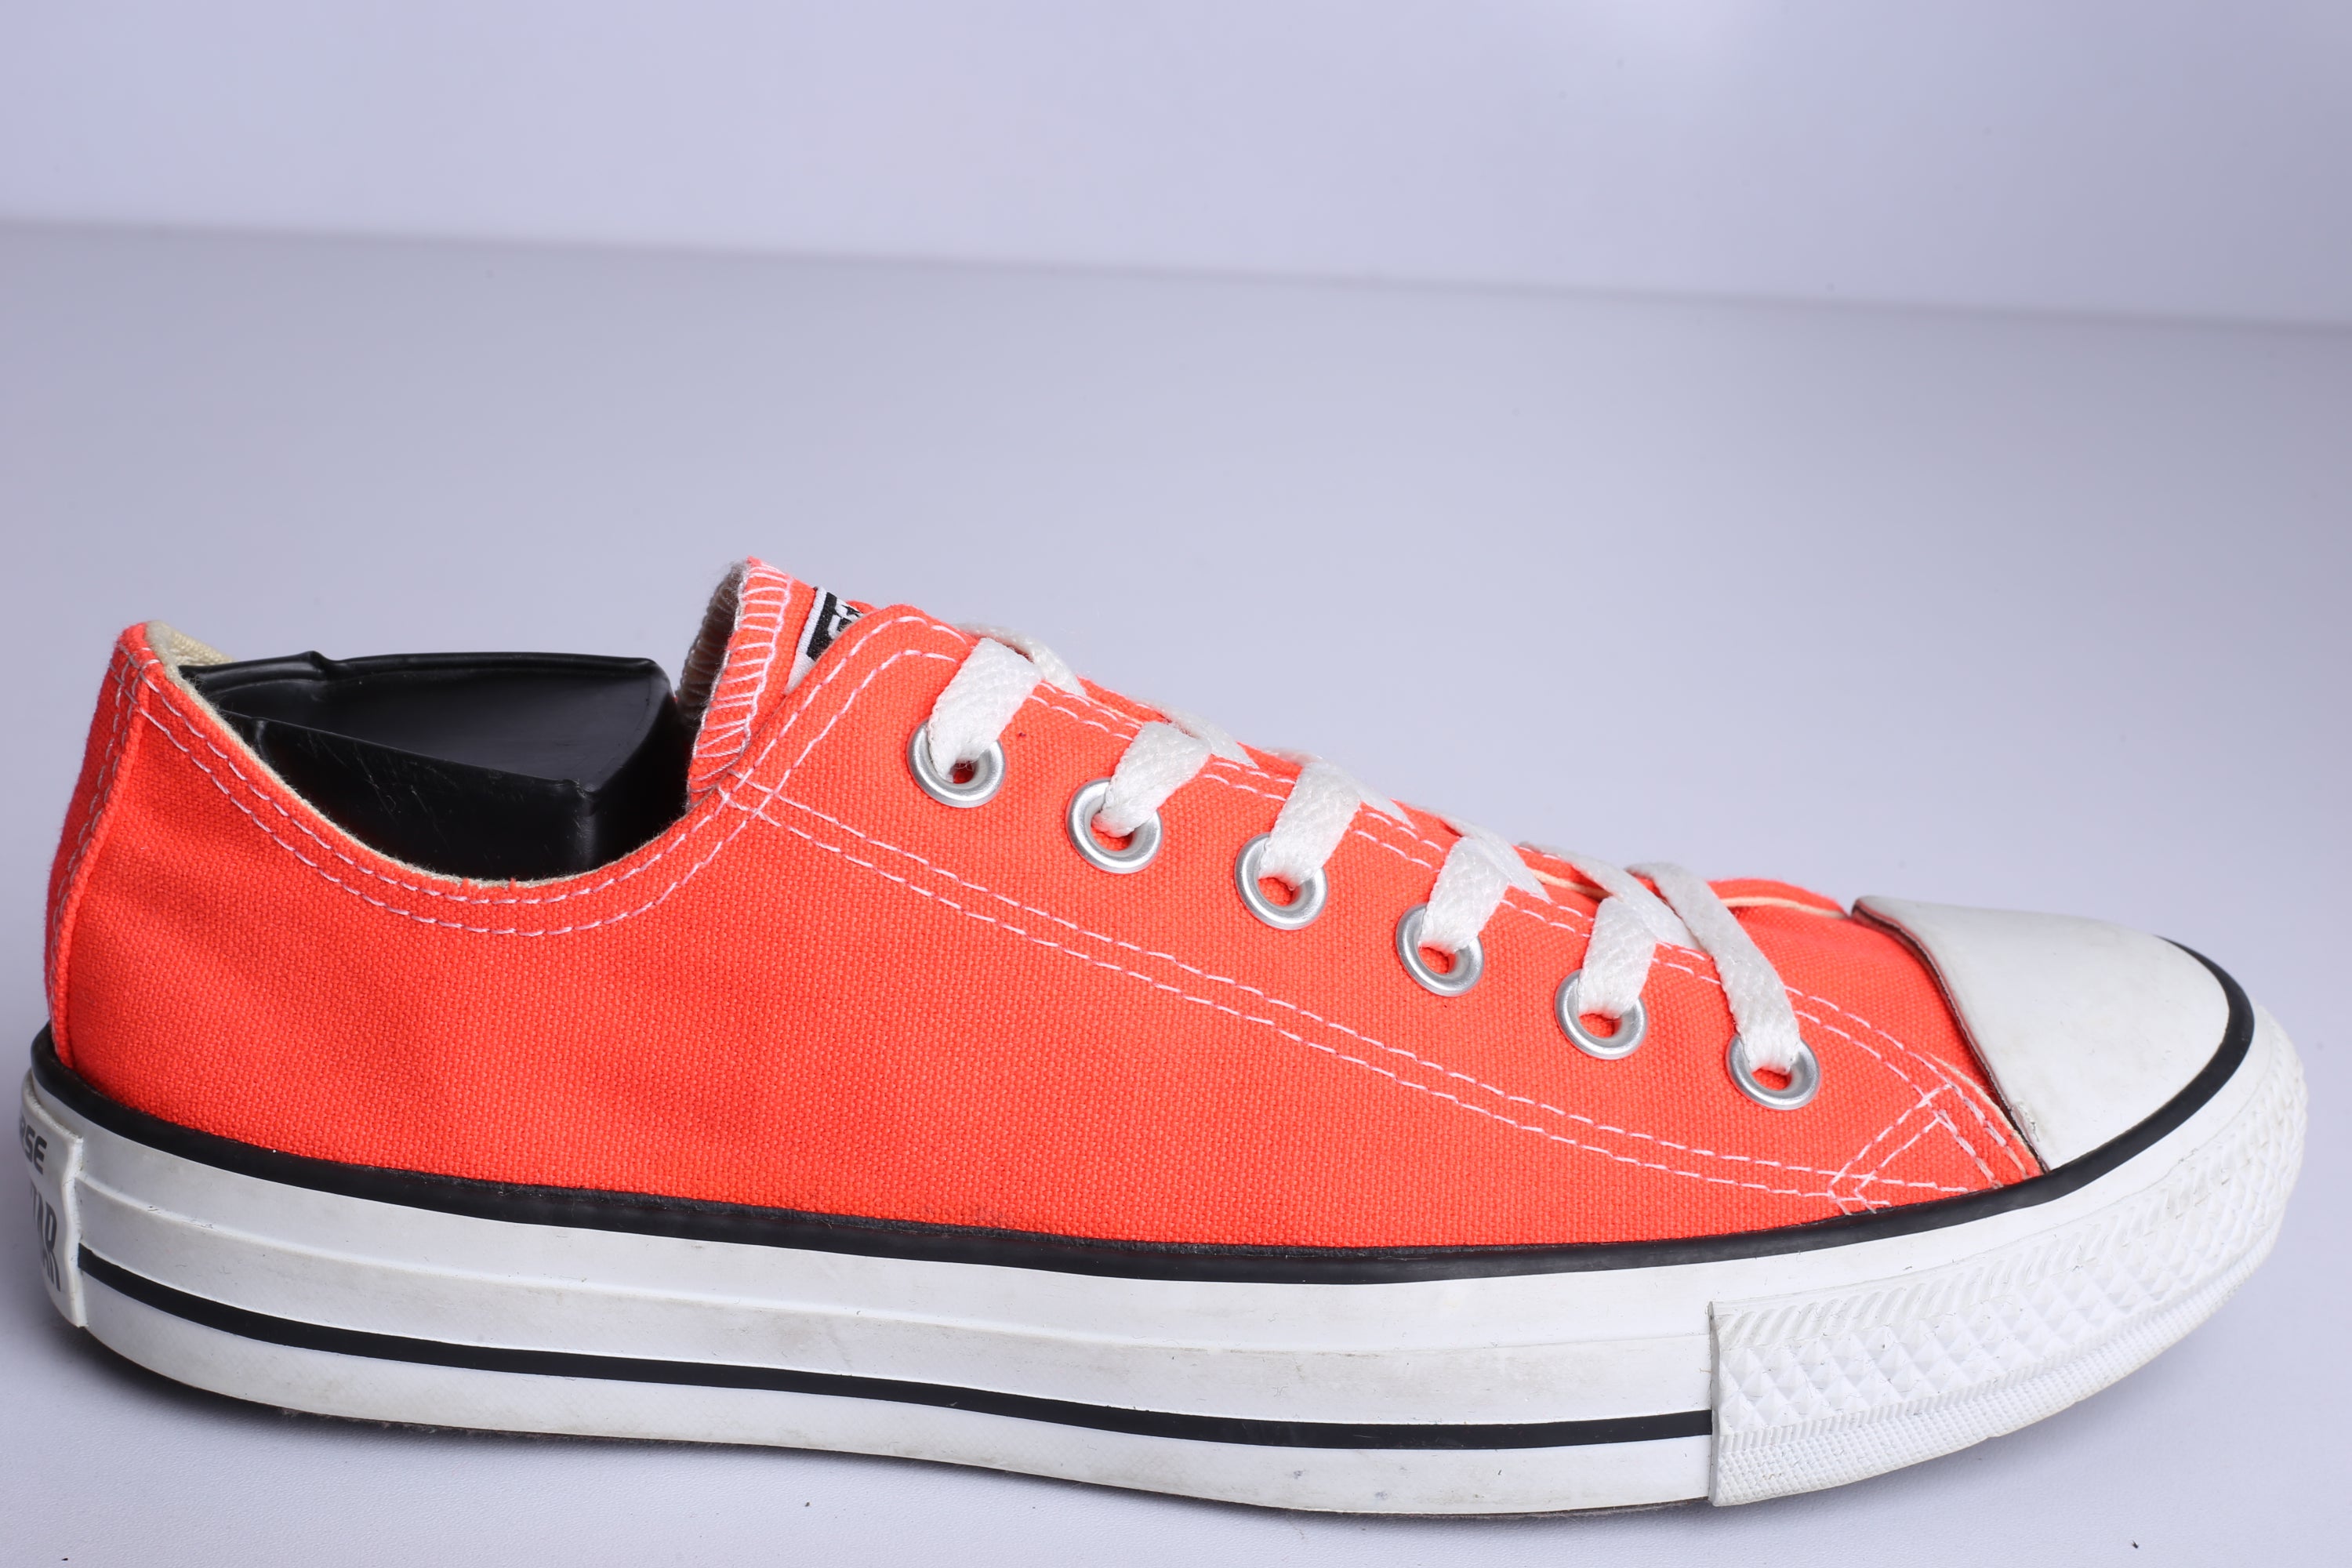 Chuck Taylor All Star Low Crimson Orange Sneaker - (Condition Premium)